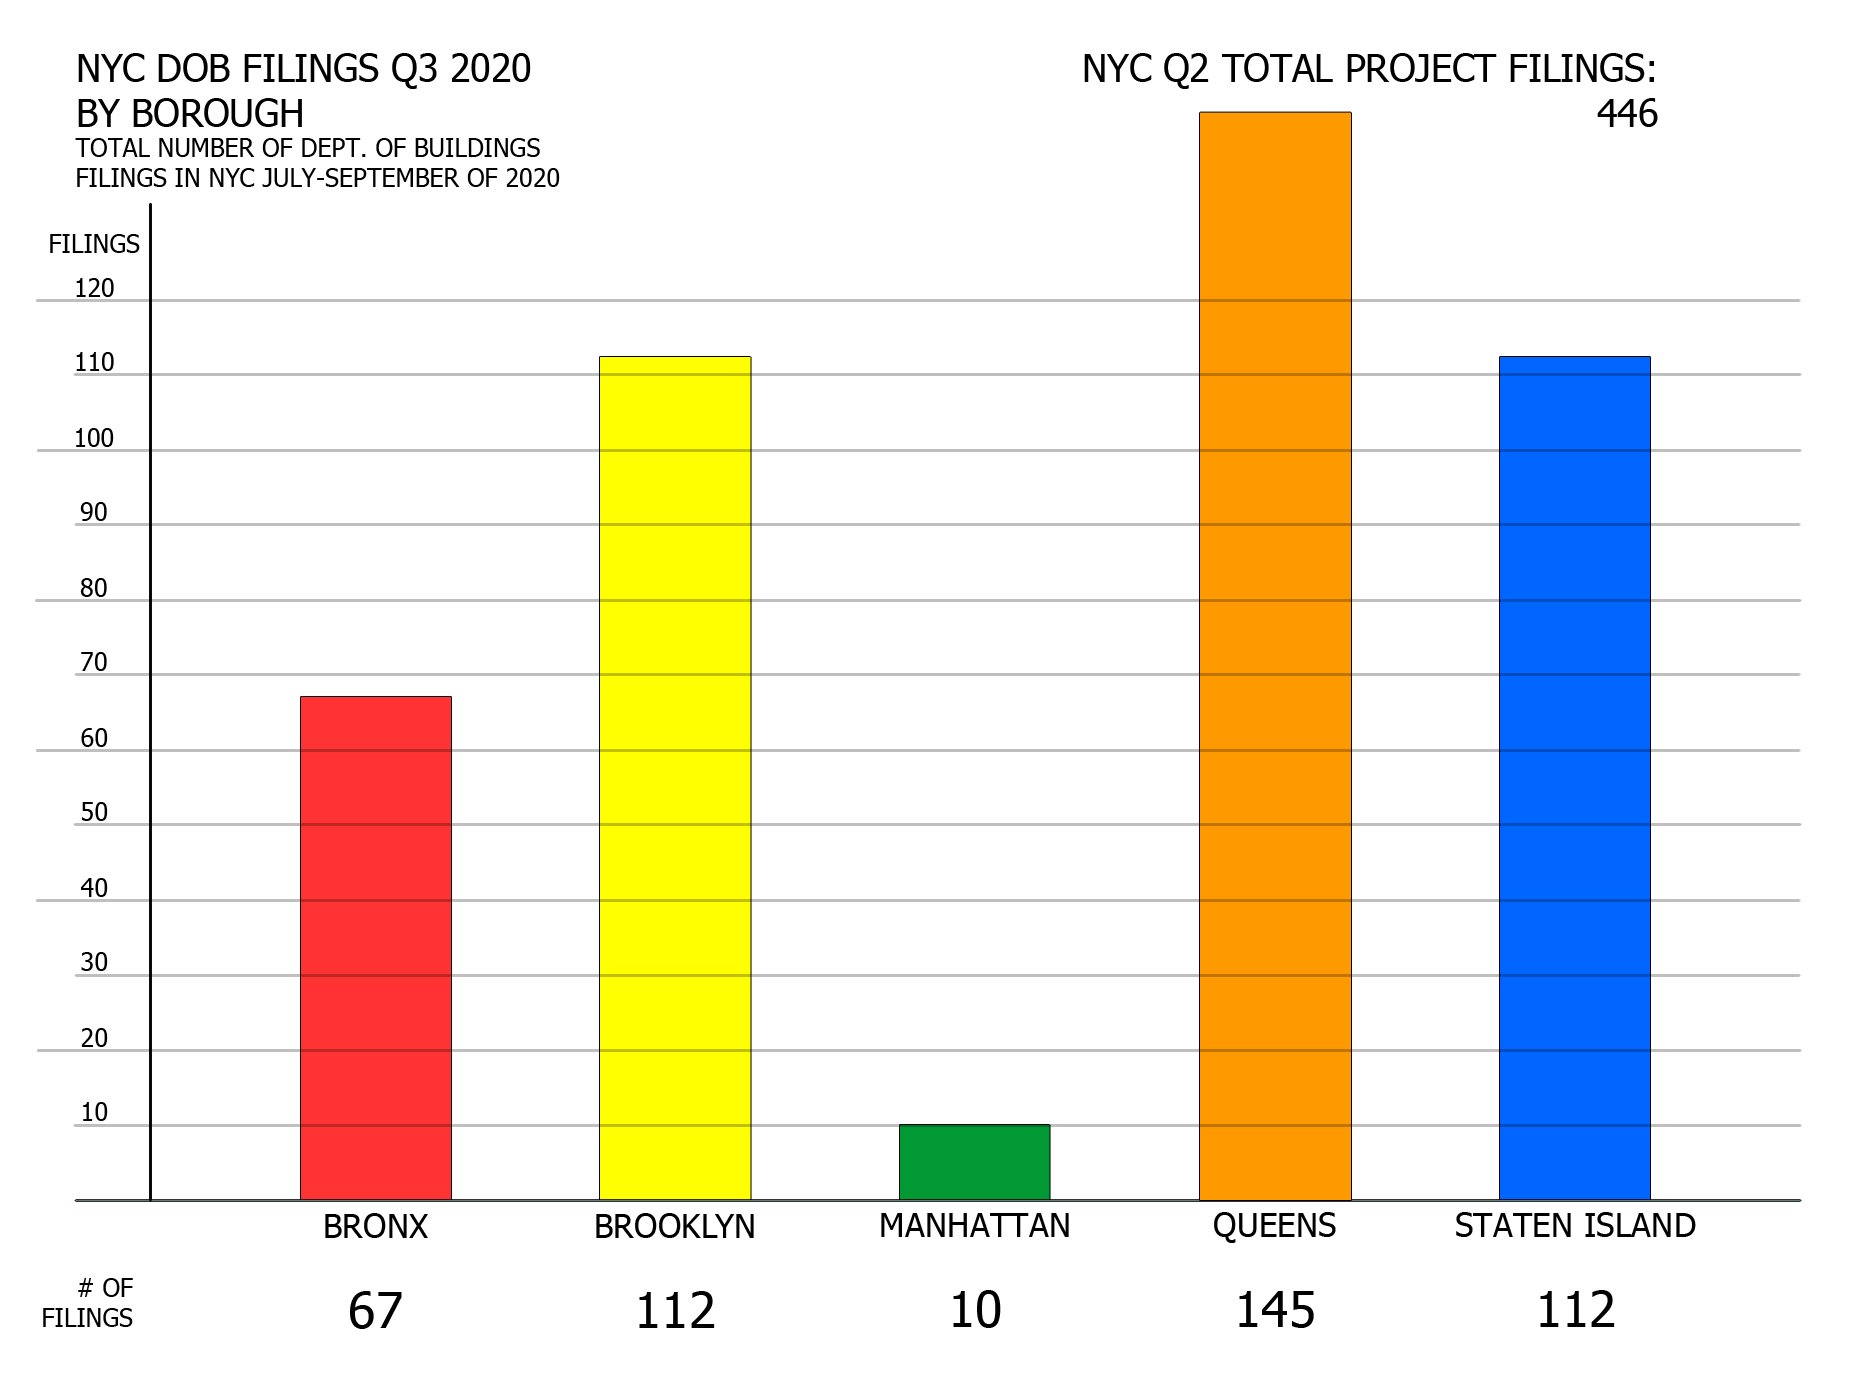 NYC DOB filings in Q3 2020 by borough. Credit: Vitali Ogorodnikov